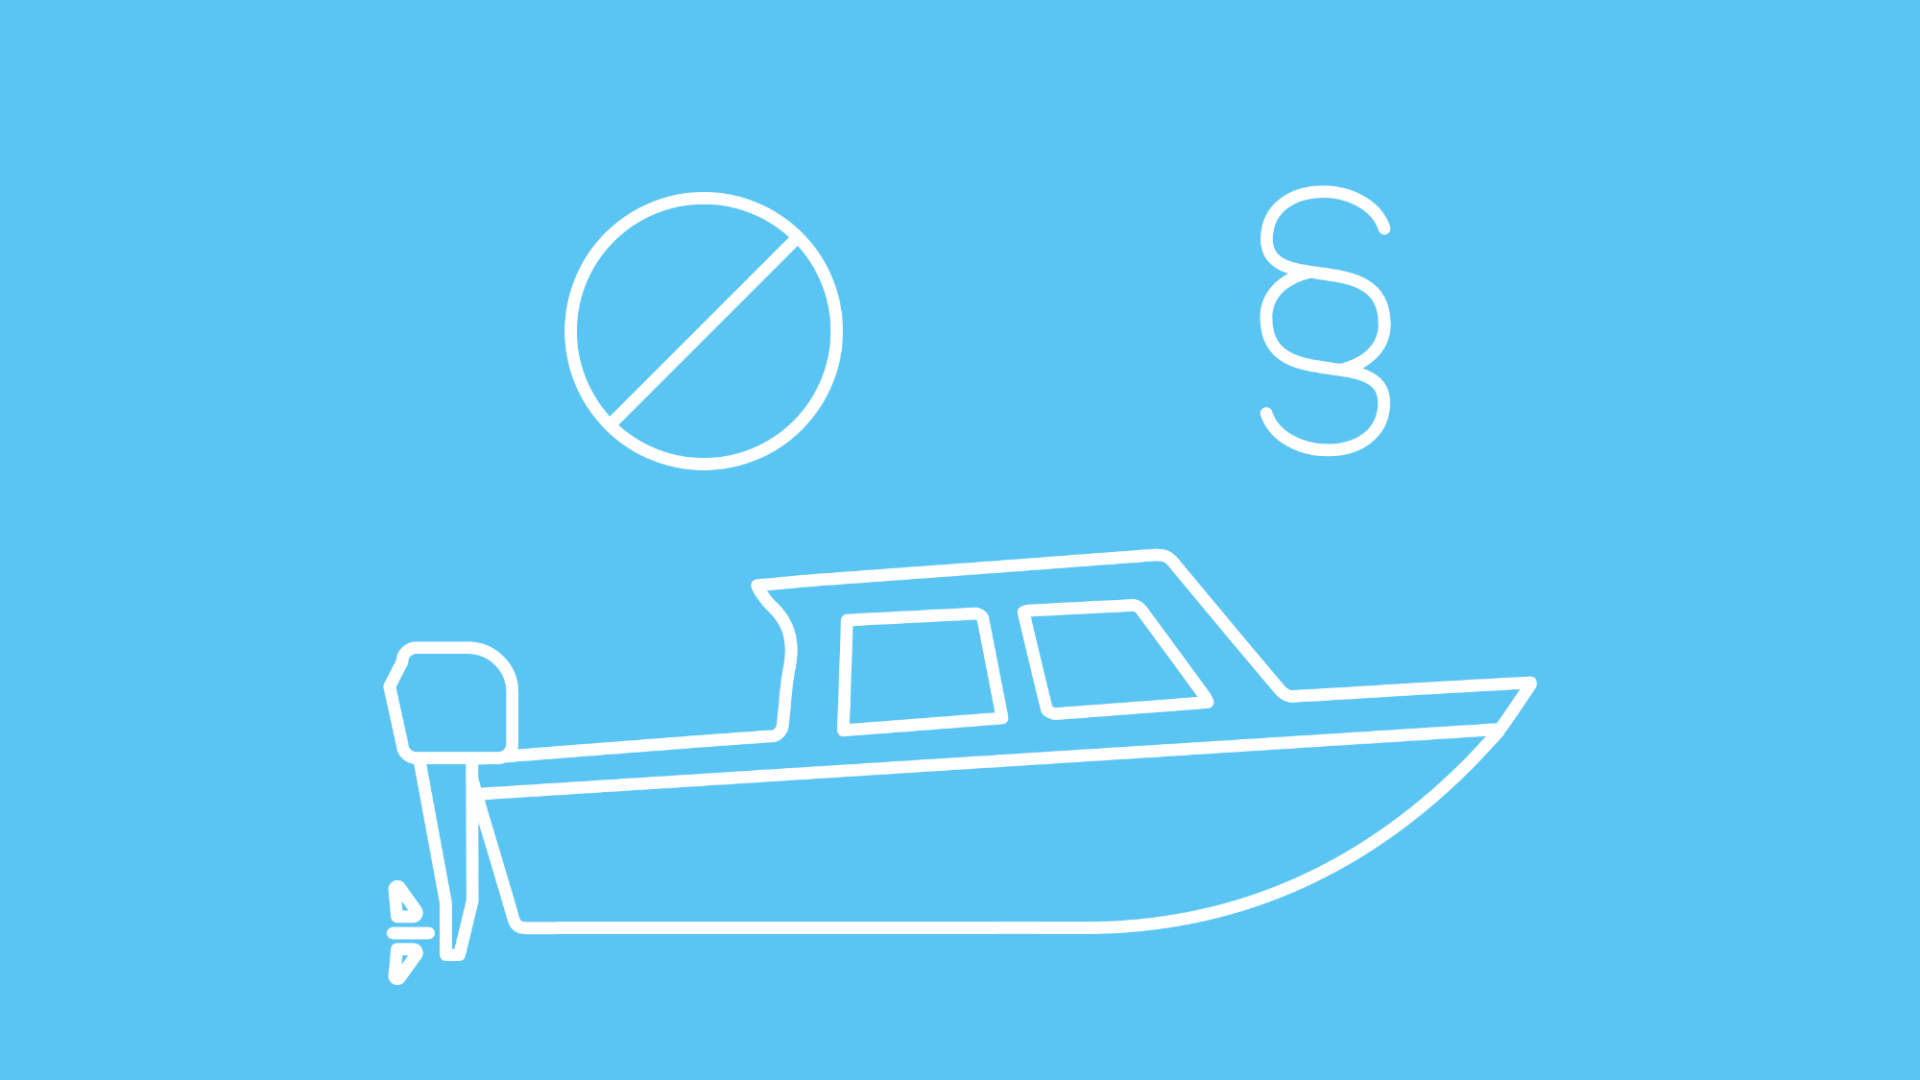 Die Grafik zeigt ein Boot in Icon-Form unter einem Paragraph-Zeichen und einem Verbotsschild, um die Frage zu illustrieren, welche Strafen für Boot fahren ohne Führerschein drohen. 